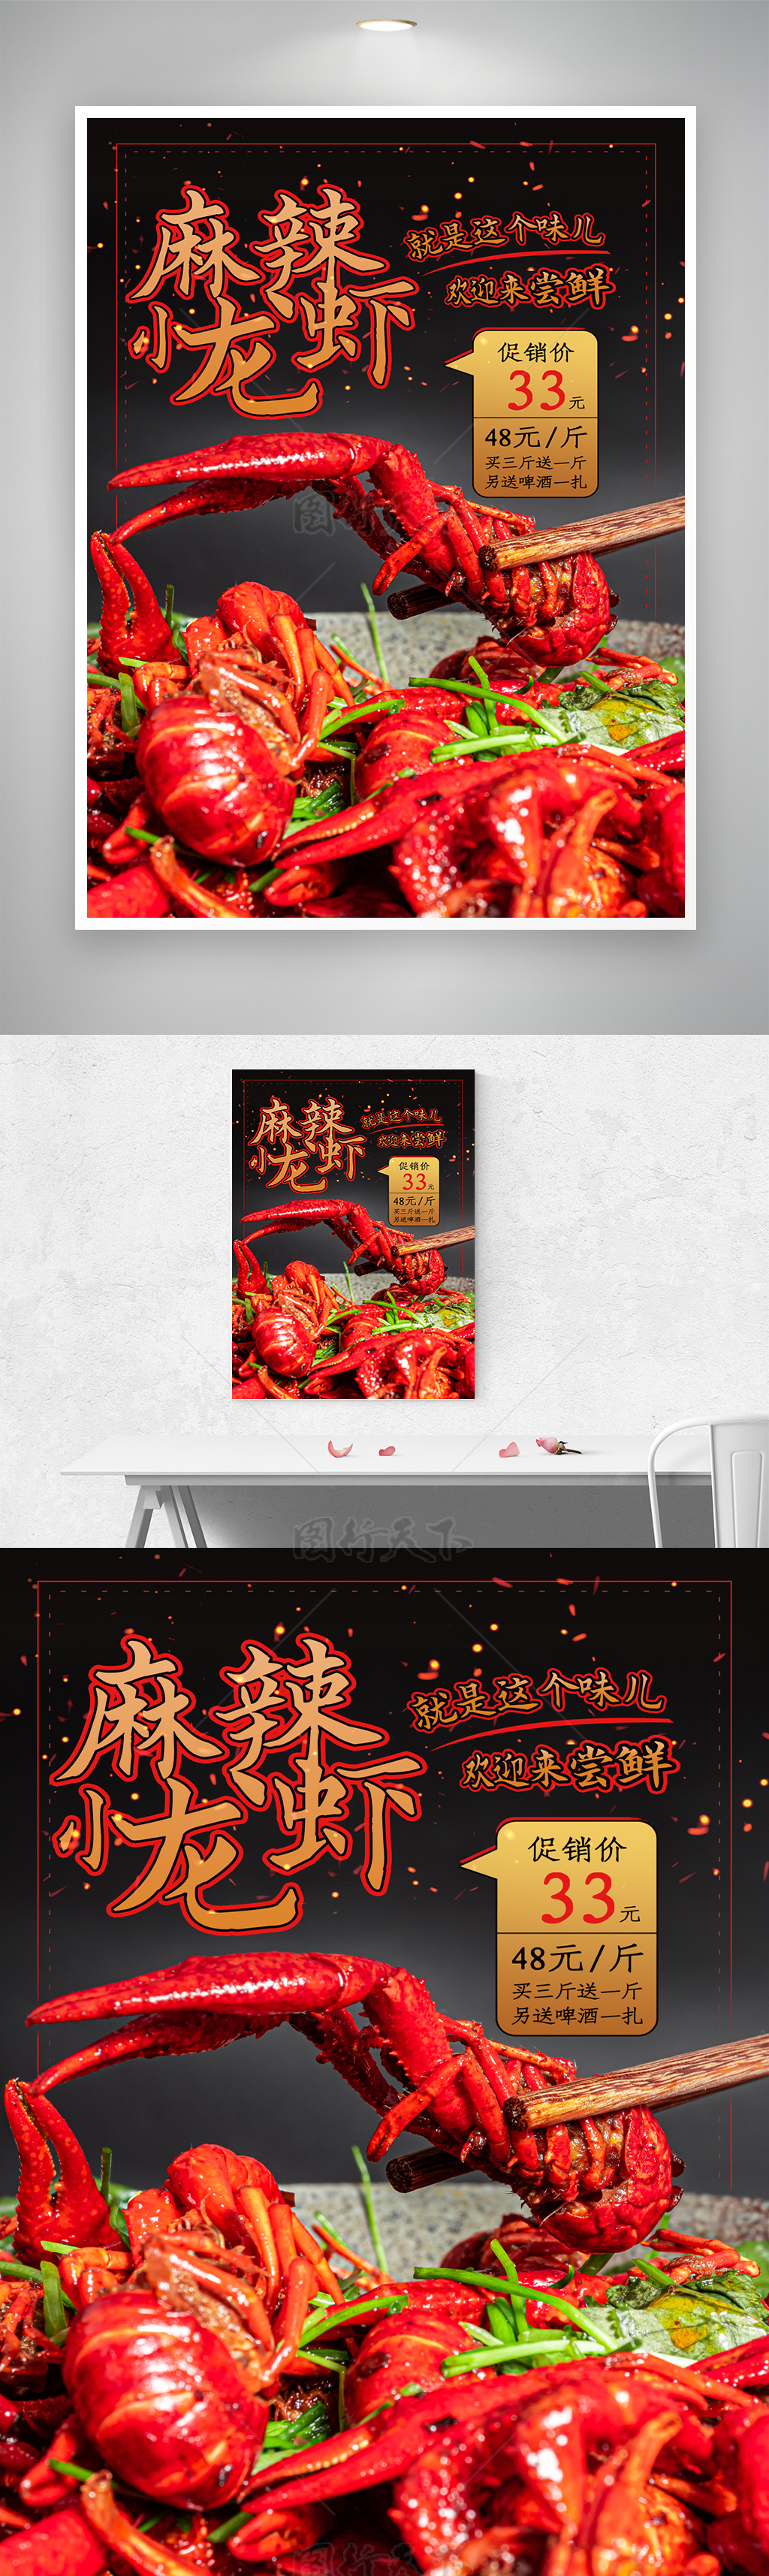 小龙虾盛宴开启美食之旅小宣传海报